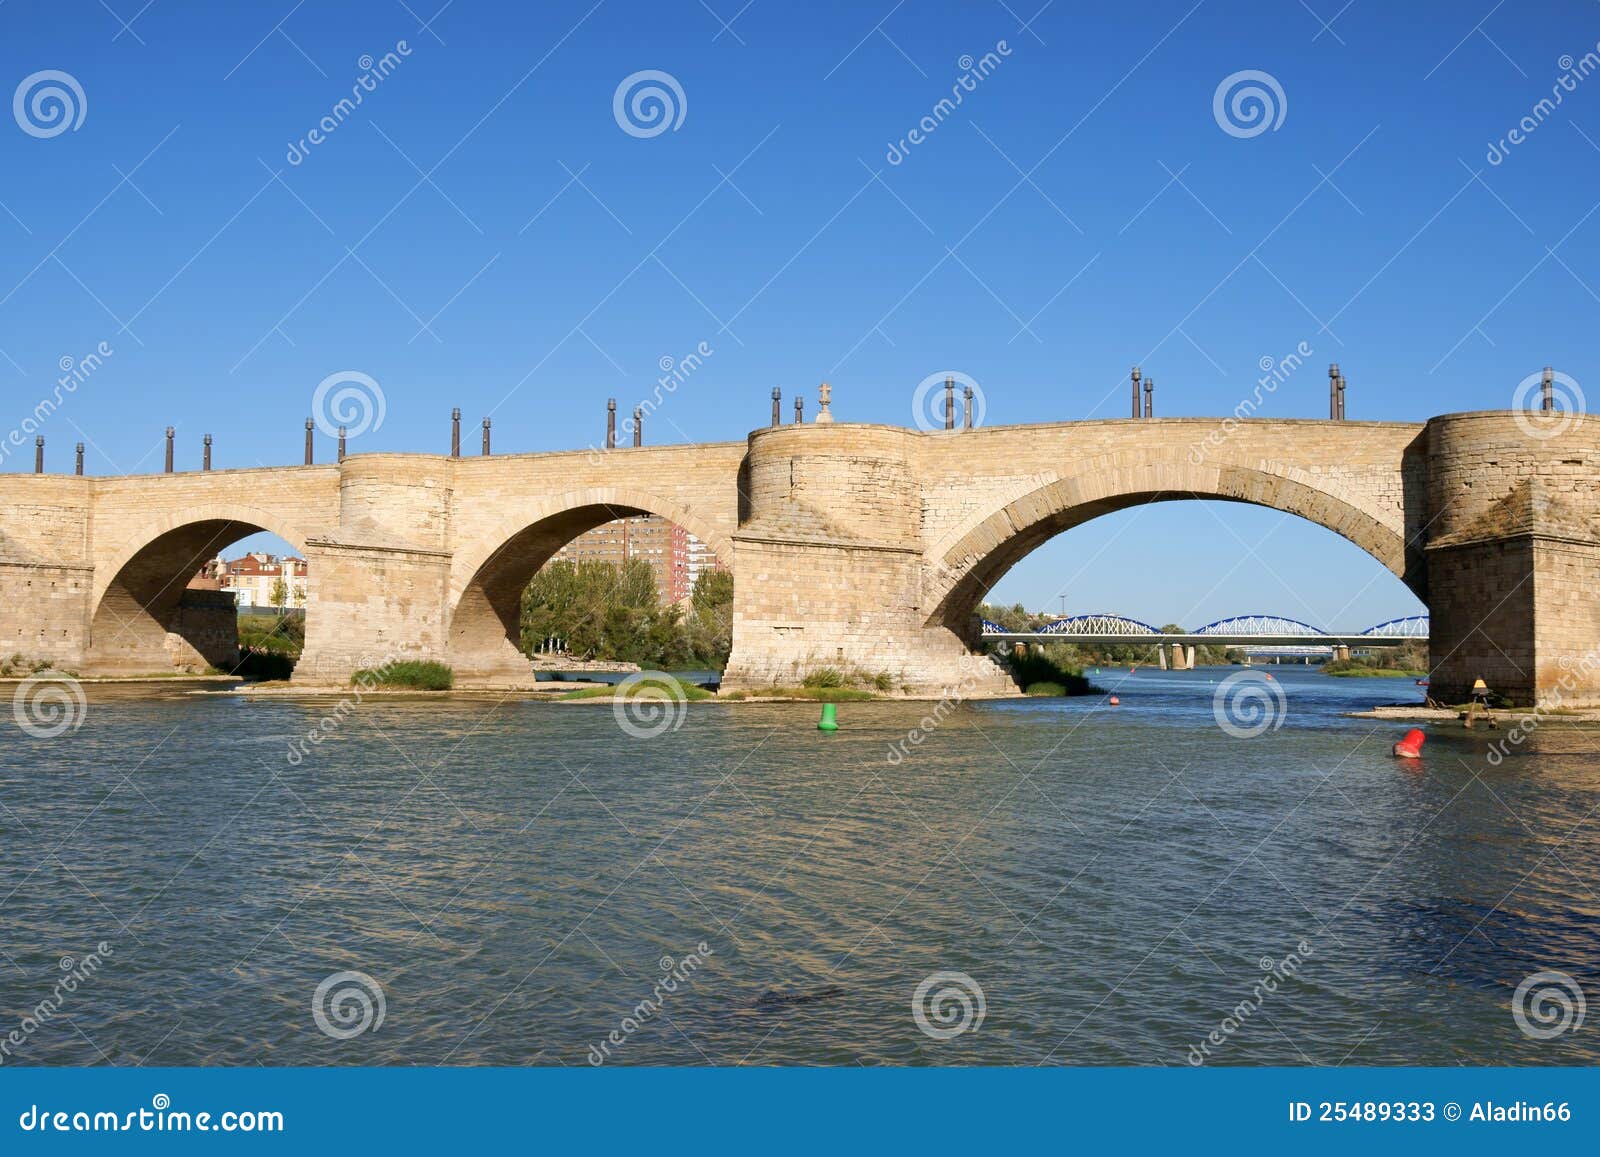 stone bridge (puente de piedra) in zaragoza